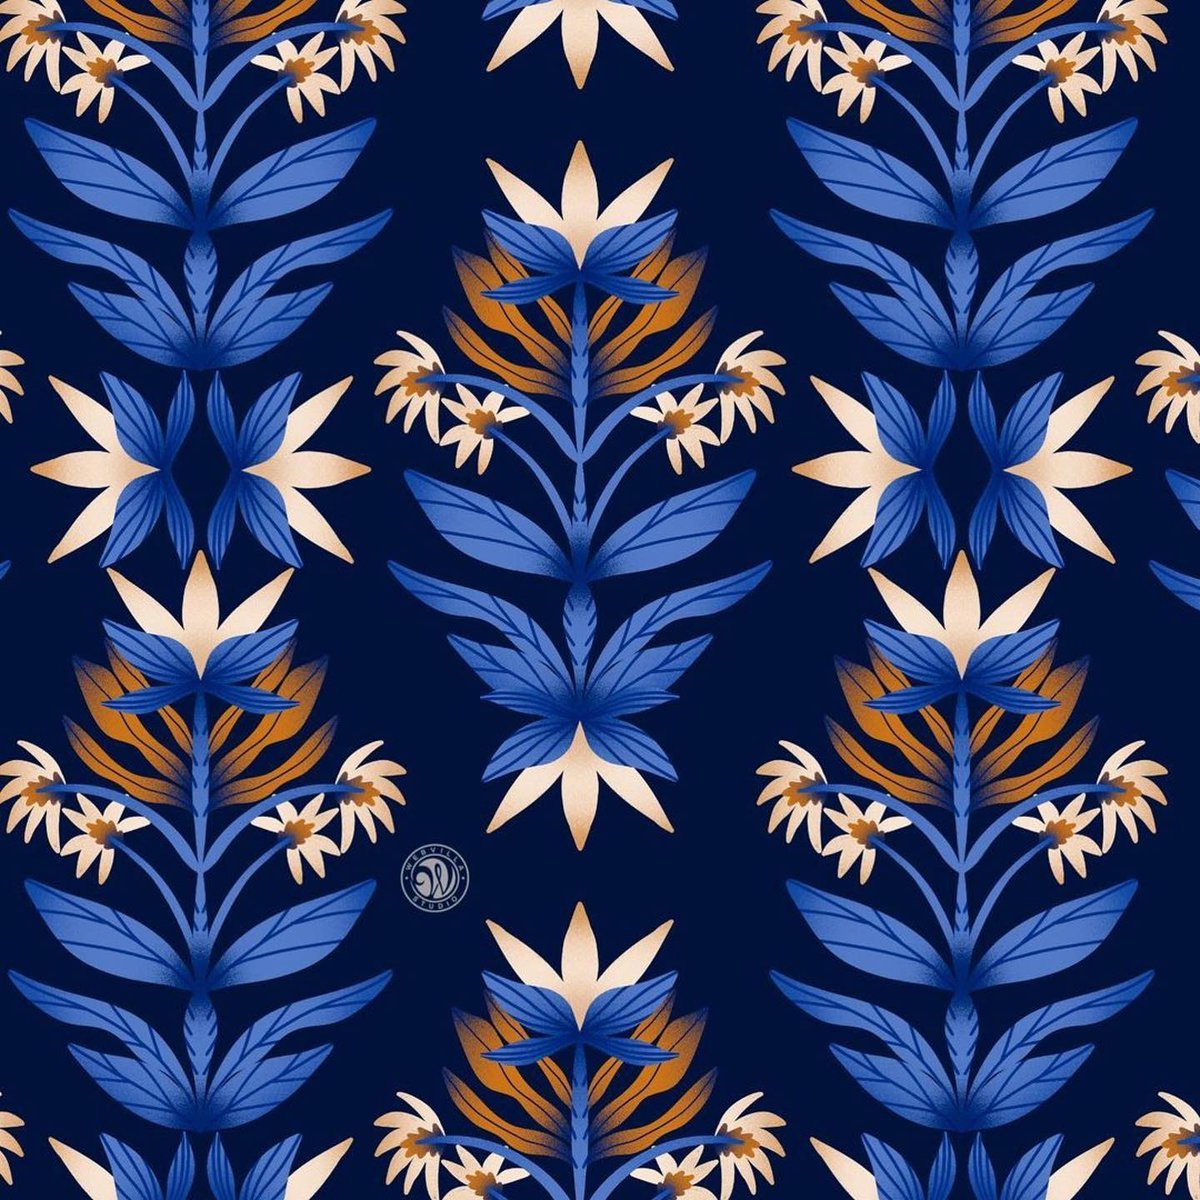 Navy Motif Floral pattern for @patternbank 

patternbank.com/webvilla

#webvillastudio #artlicensing #licensedartist #pattern #surfacepattern #patternbank #surfacepatterndesign #patterndesign #surfacedesign #textiledesign #illustration #fabricdesign #printandpattern